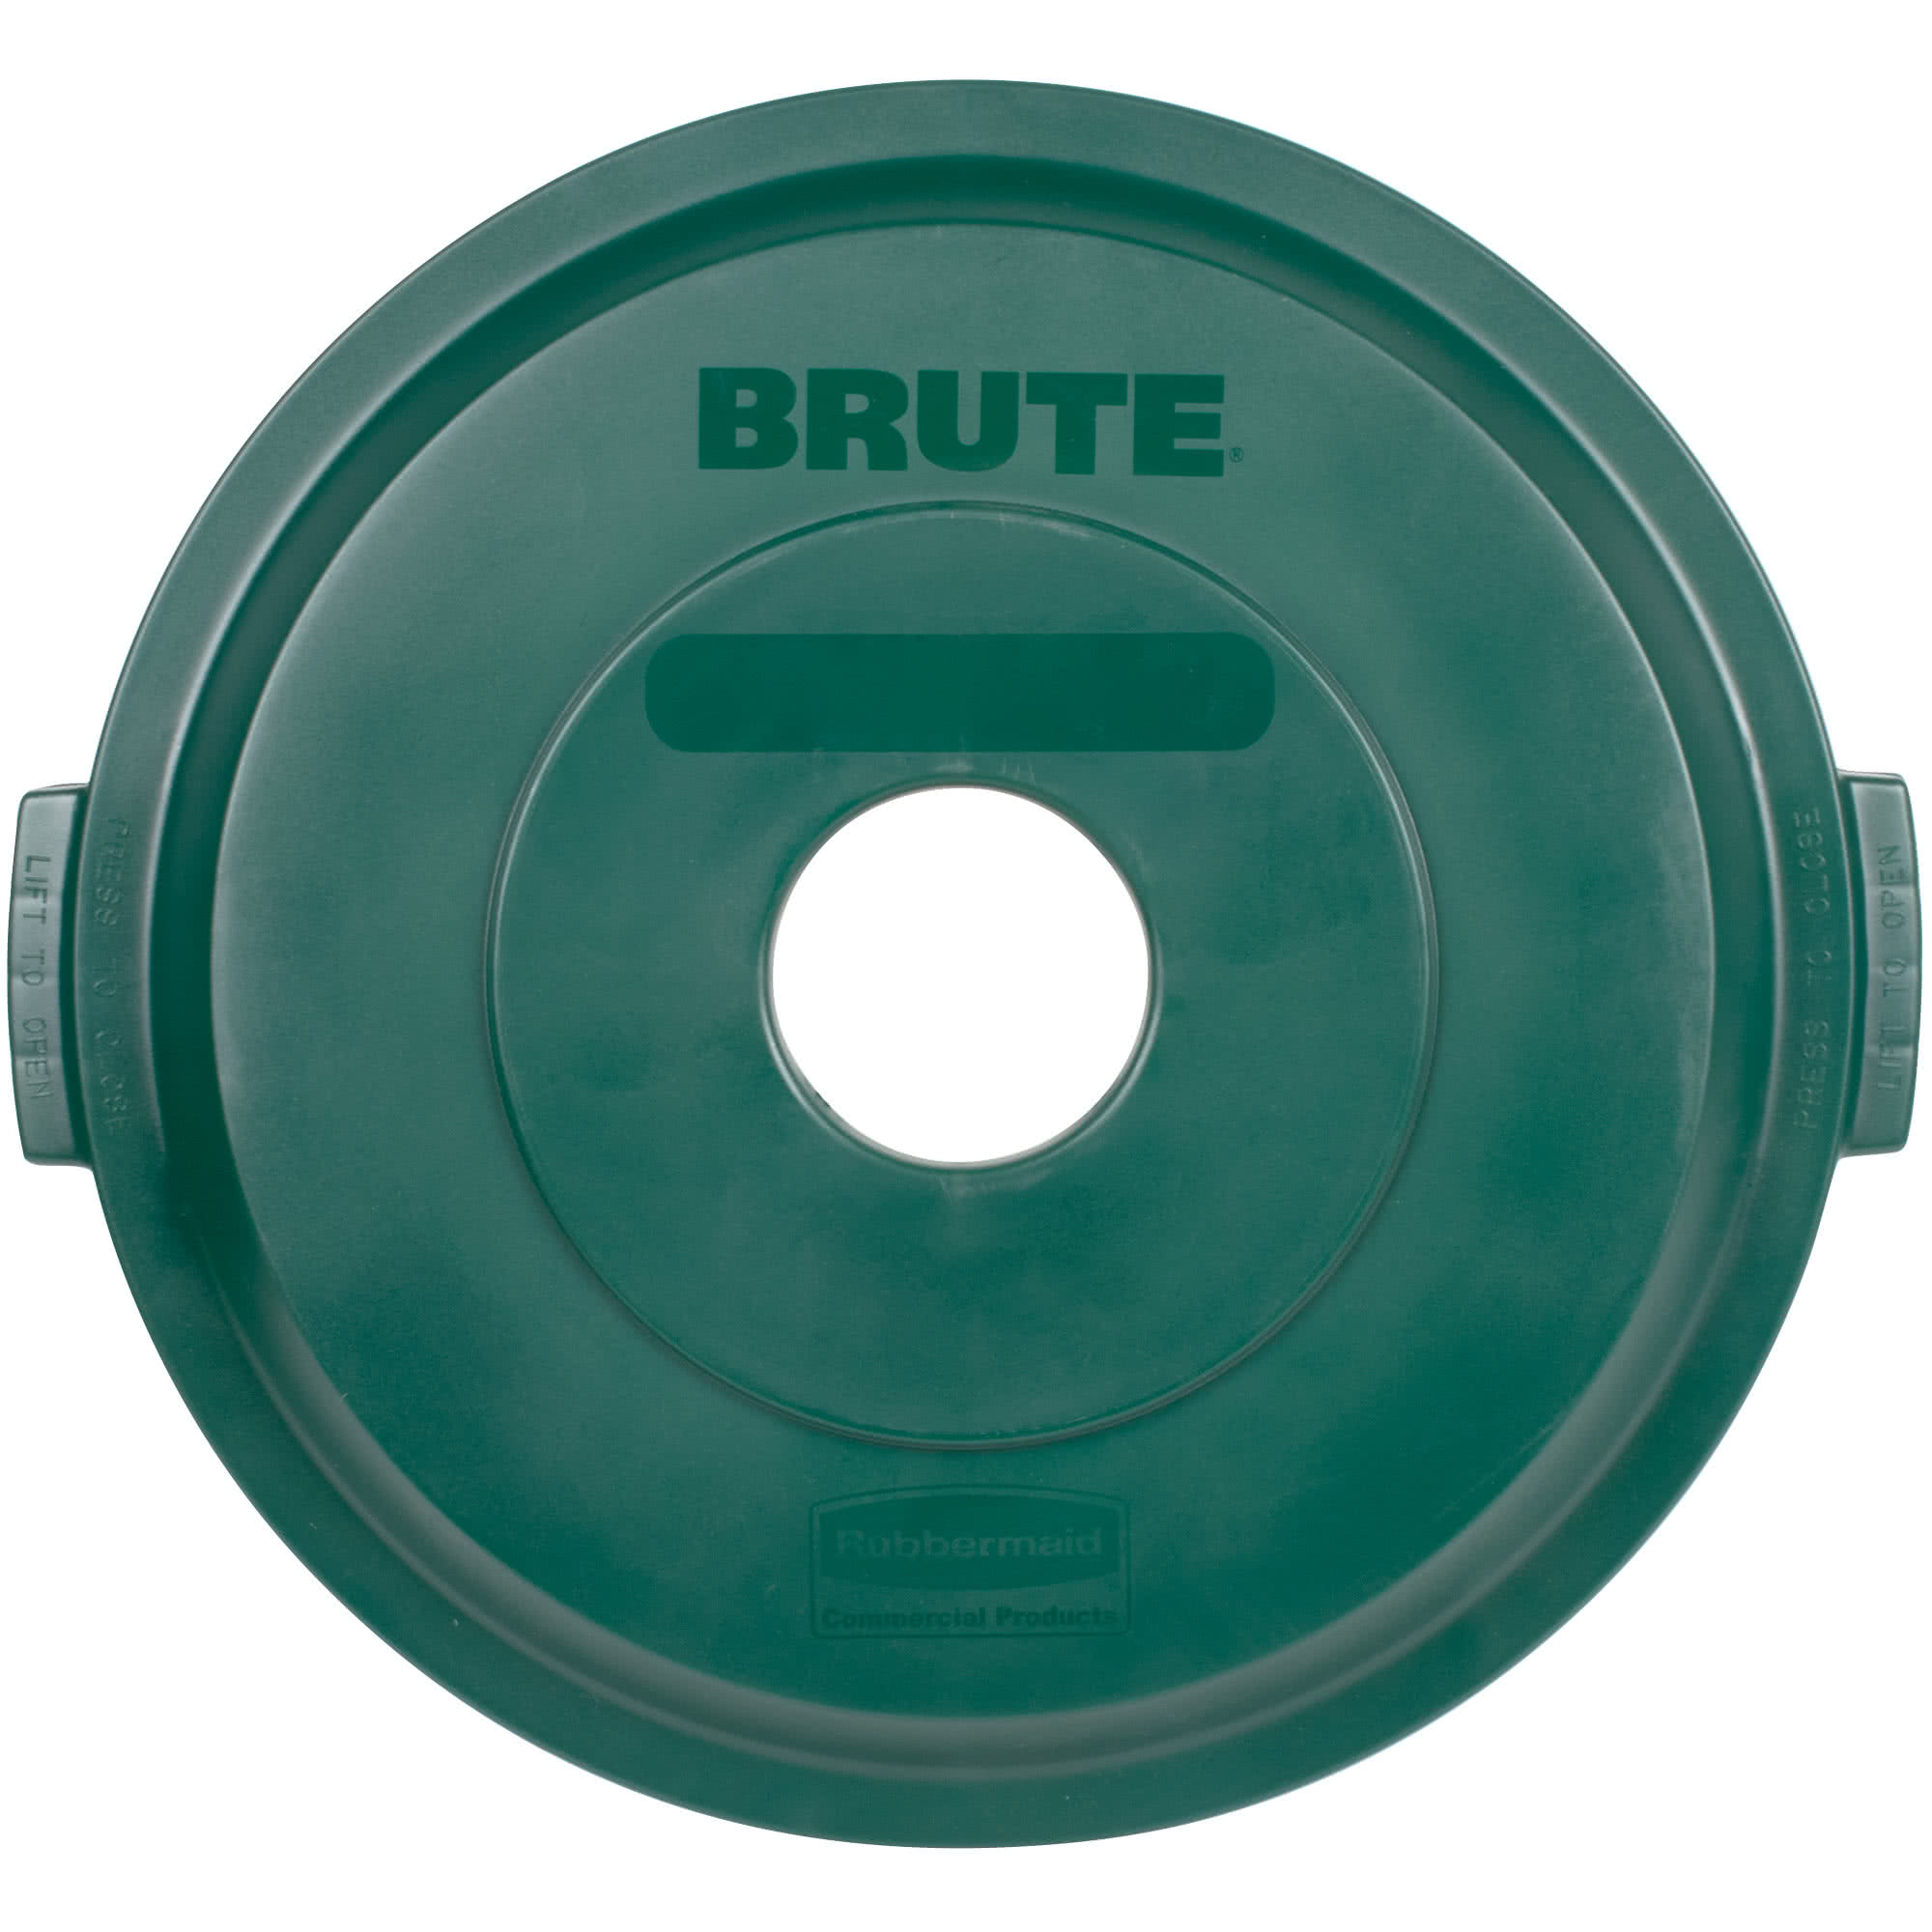 Rubbermaid 1788377 tapa Brute color verde para reciclaje de botellas, aplica contenedor Brute de 32 galones